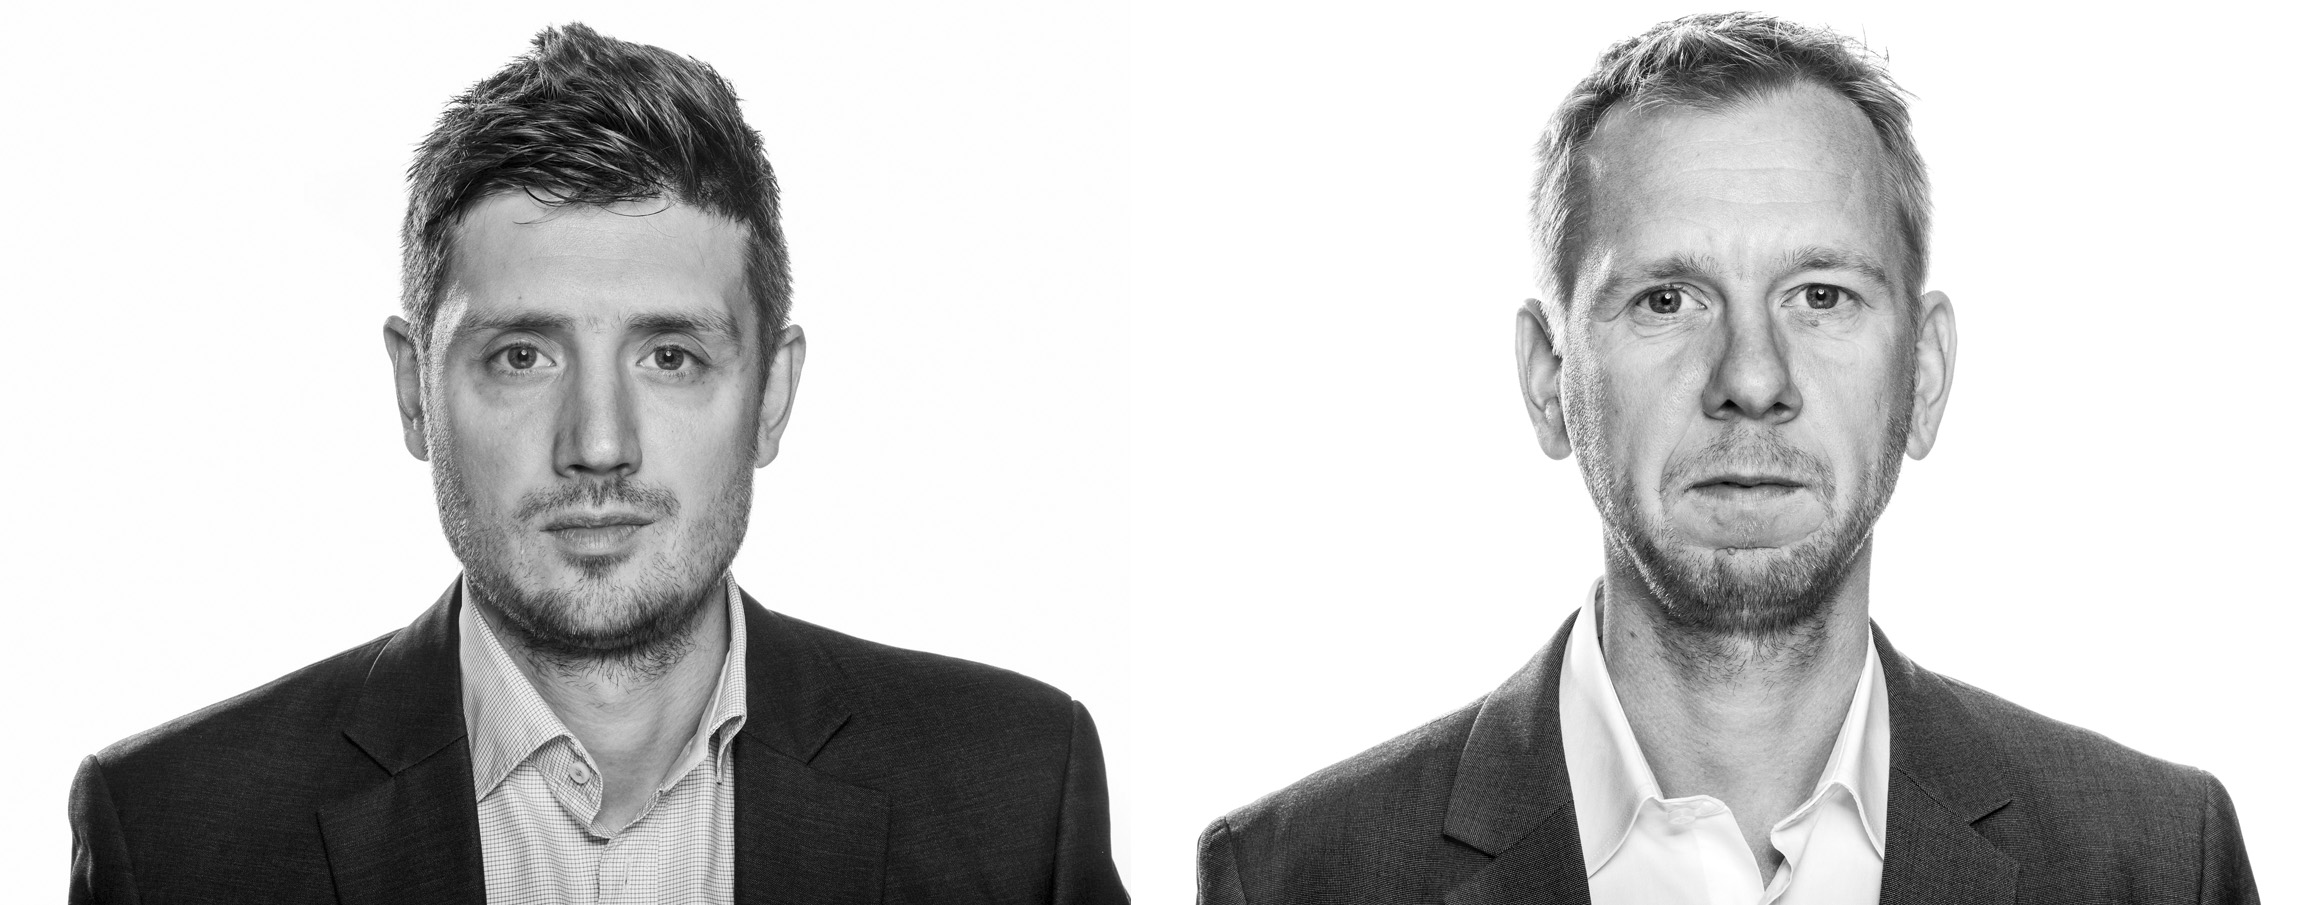 Berlingske-journalisterne Michael Lund og Simon Bendtsen har sammen afdækket Danske Banks hvidvaskningsskandale for milliarder af kroner i de estiske filialer, Foto: Søren Bidstrup, Berlingske